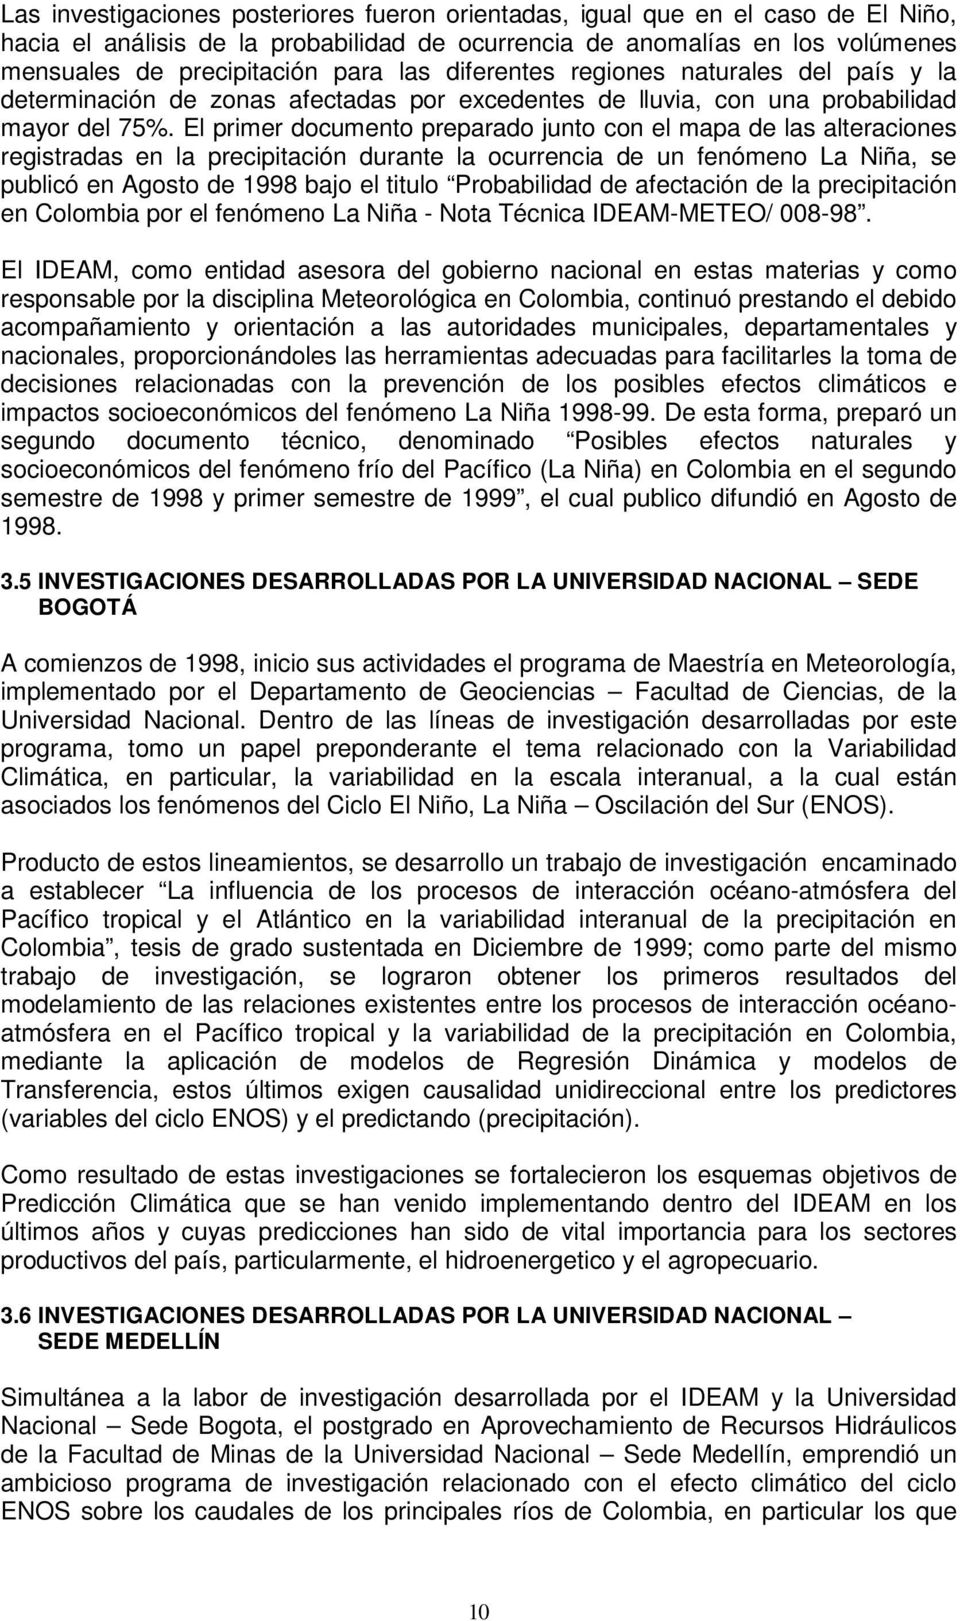 El primer documento preparado junto con el mapa de las alteraciones registradas en la precipitación durante la ocurrencia de un fenómeno La Niña, se publicó en Agosto de 1998 bajo el titulo